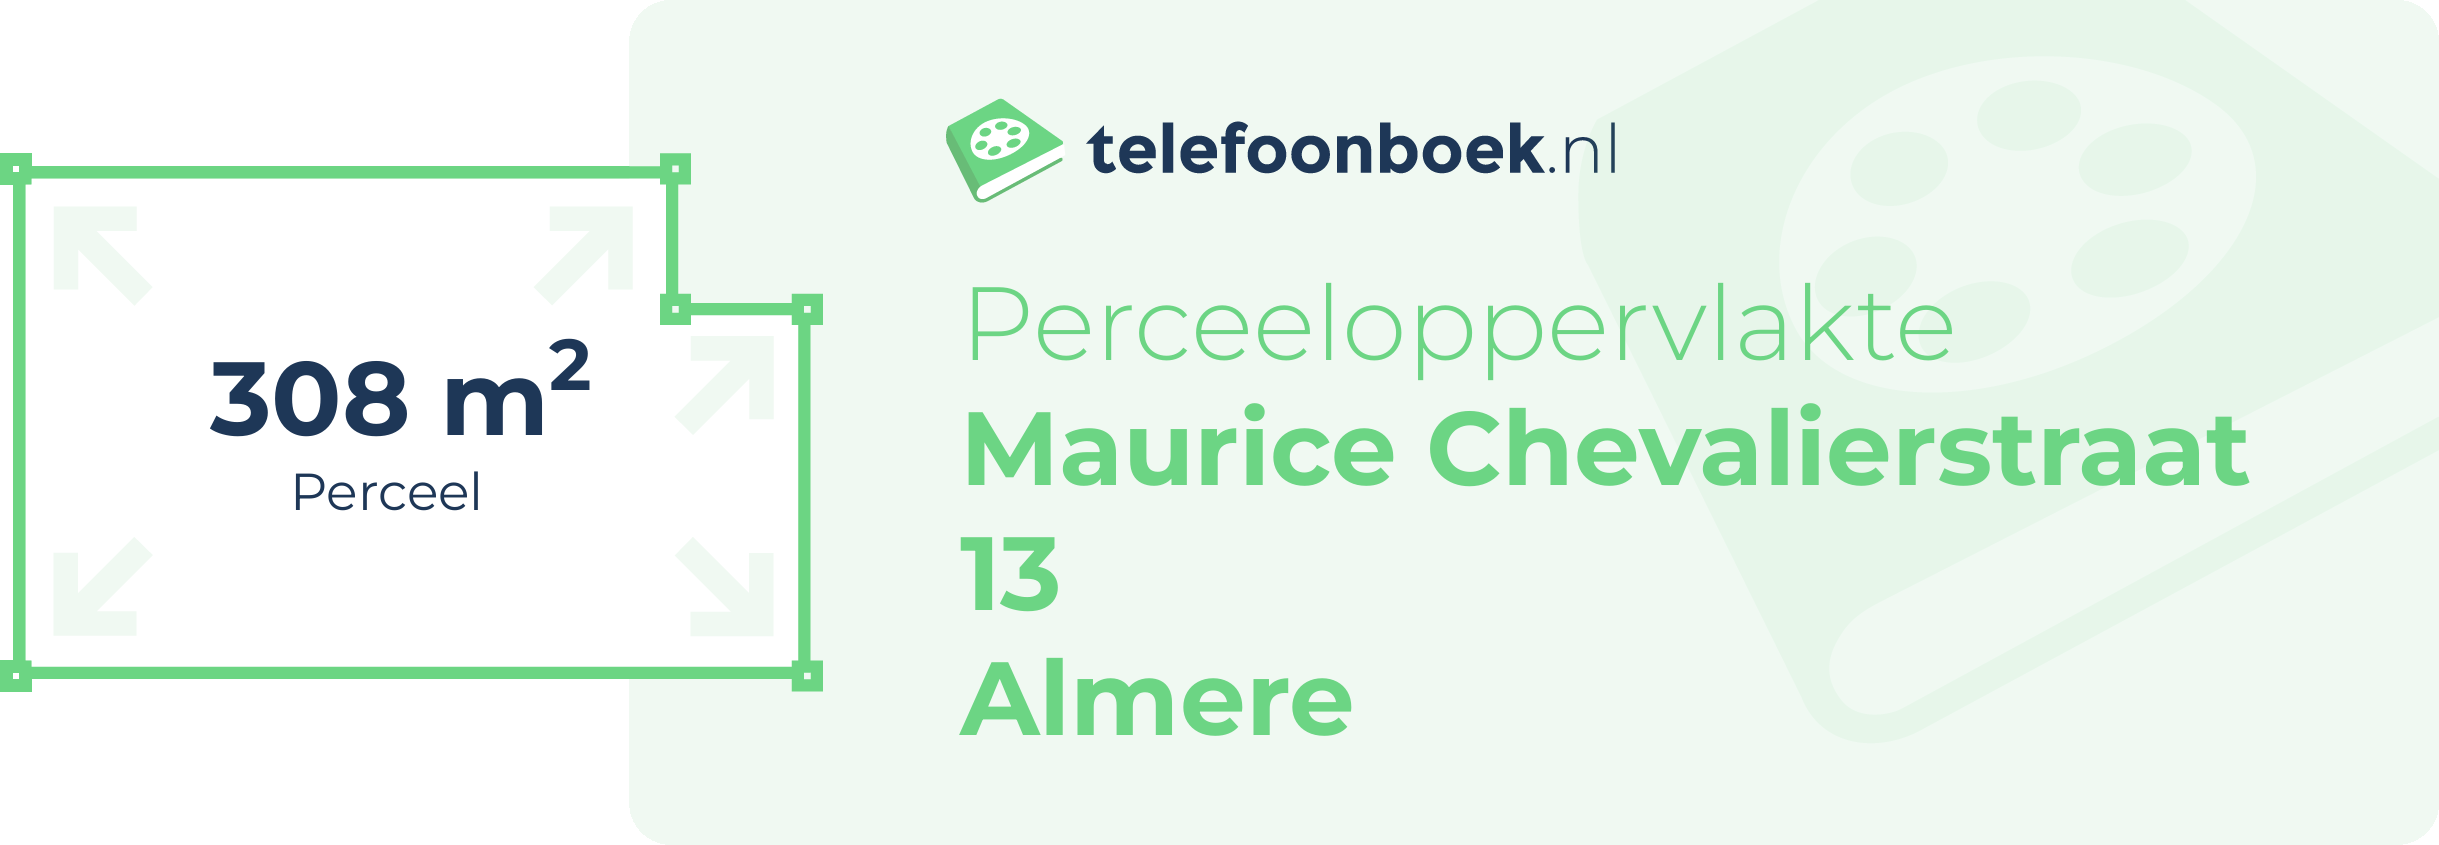 Perceeloppervlakte Maurice Chevalierstraat 13 Almere